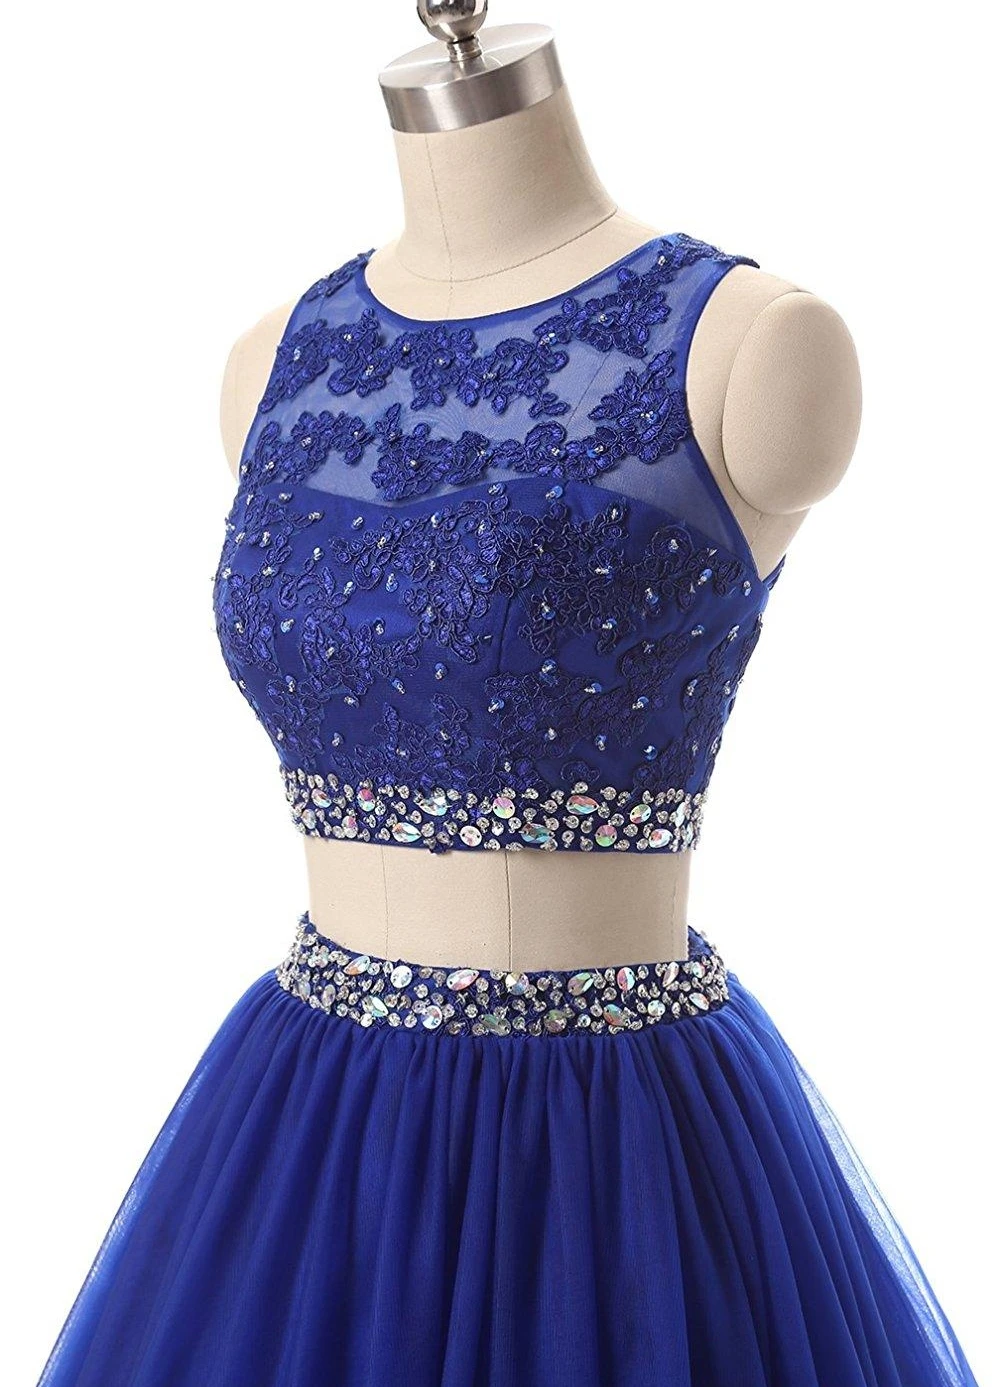 Vestidos כחול רויאל תכשיט לצוואר שני חלקים שמלות לנשף 2019 Appliqus חרוזים ערב רשמי שמלות מפלגה שמלות חלוק דה נשף . ' - ' . 3